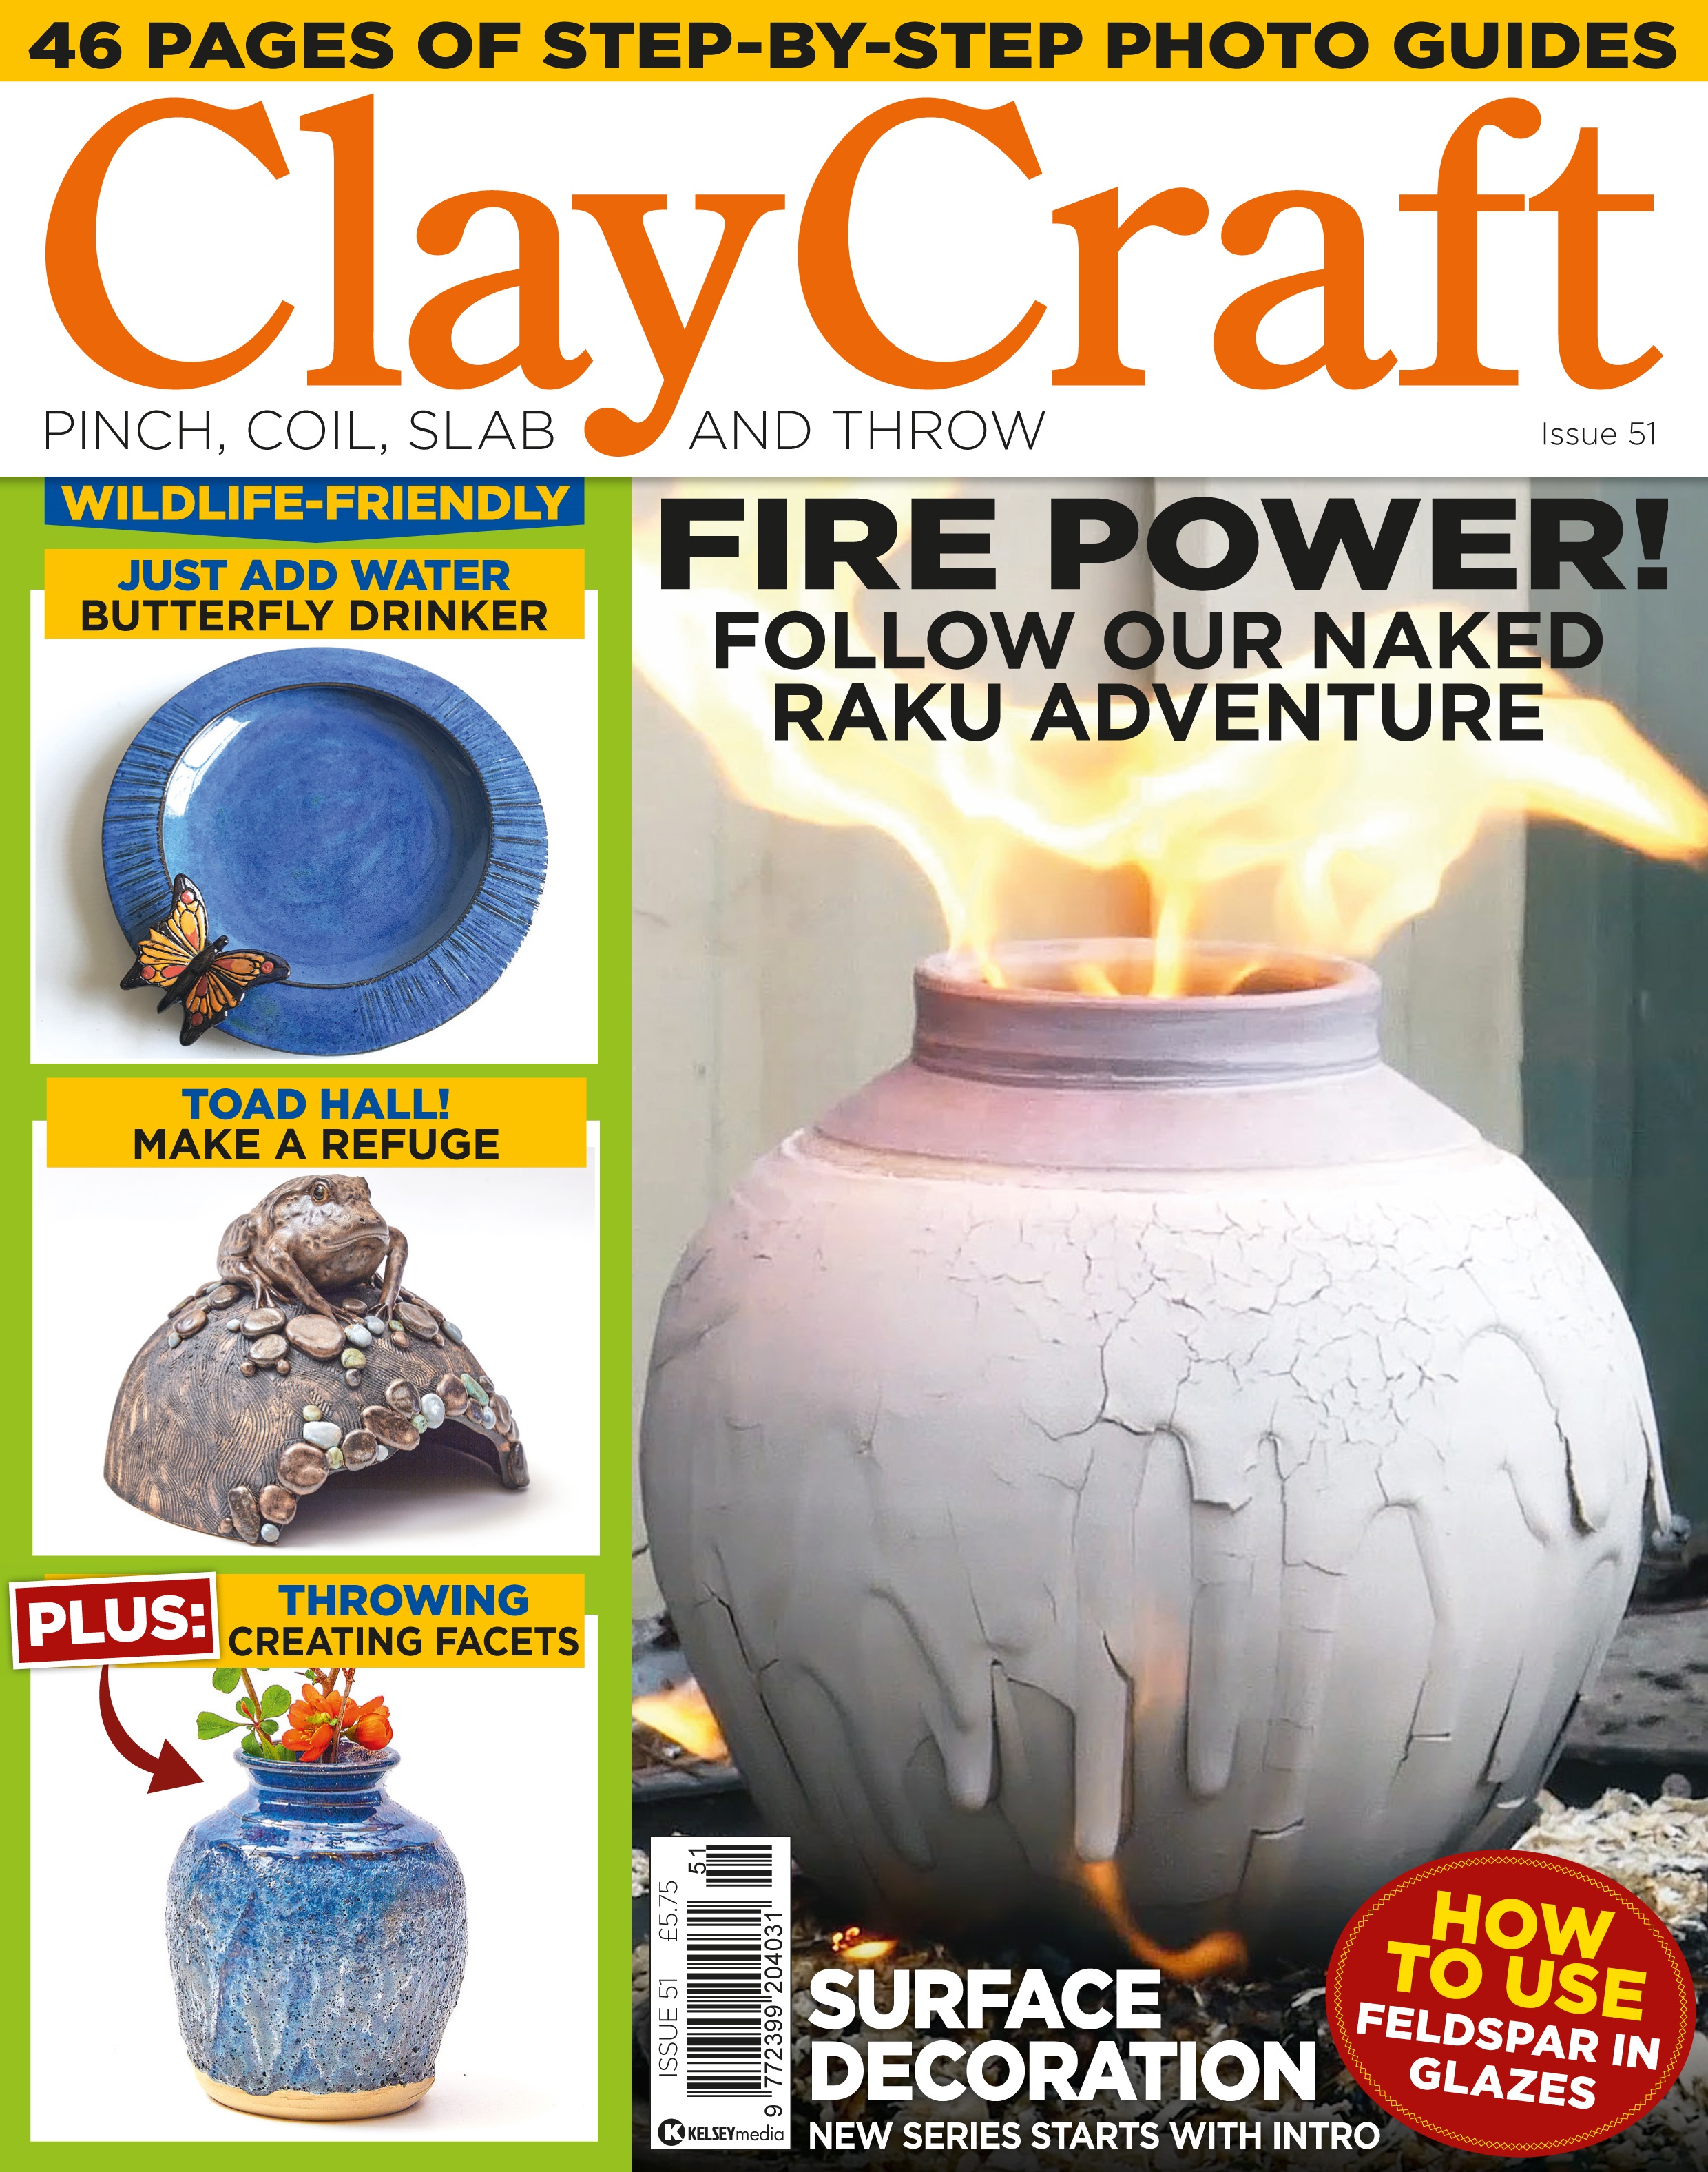 ClayCraft Issue 51 Fire Power!